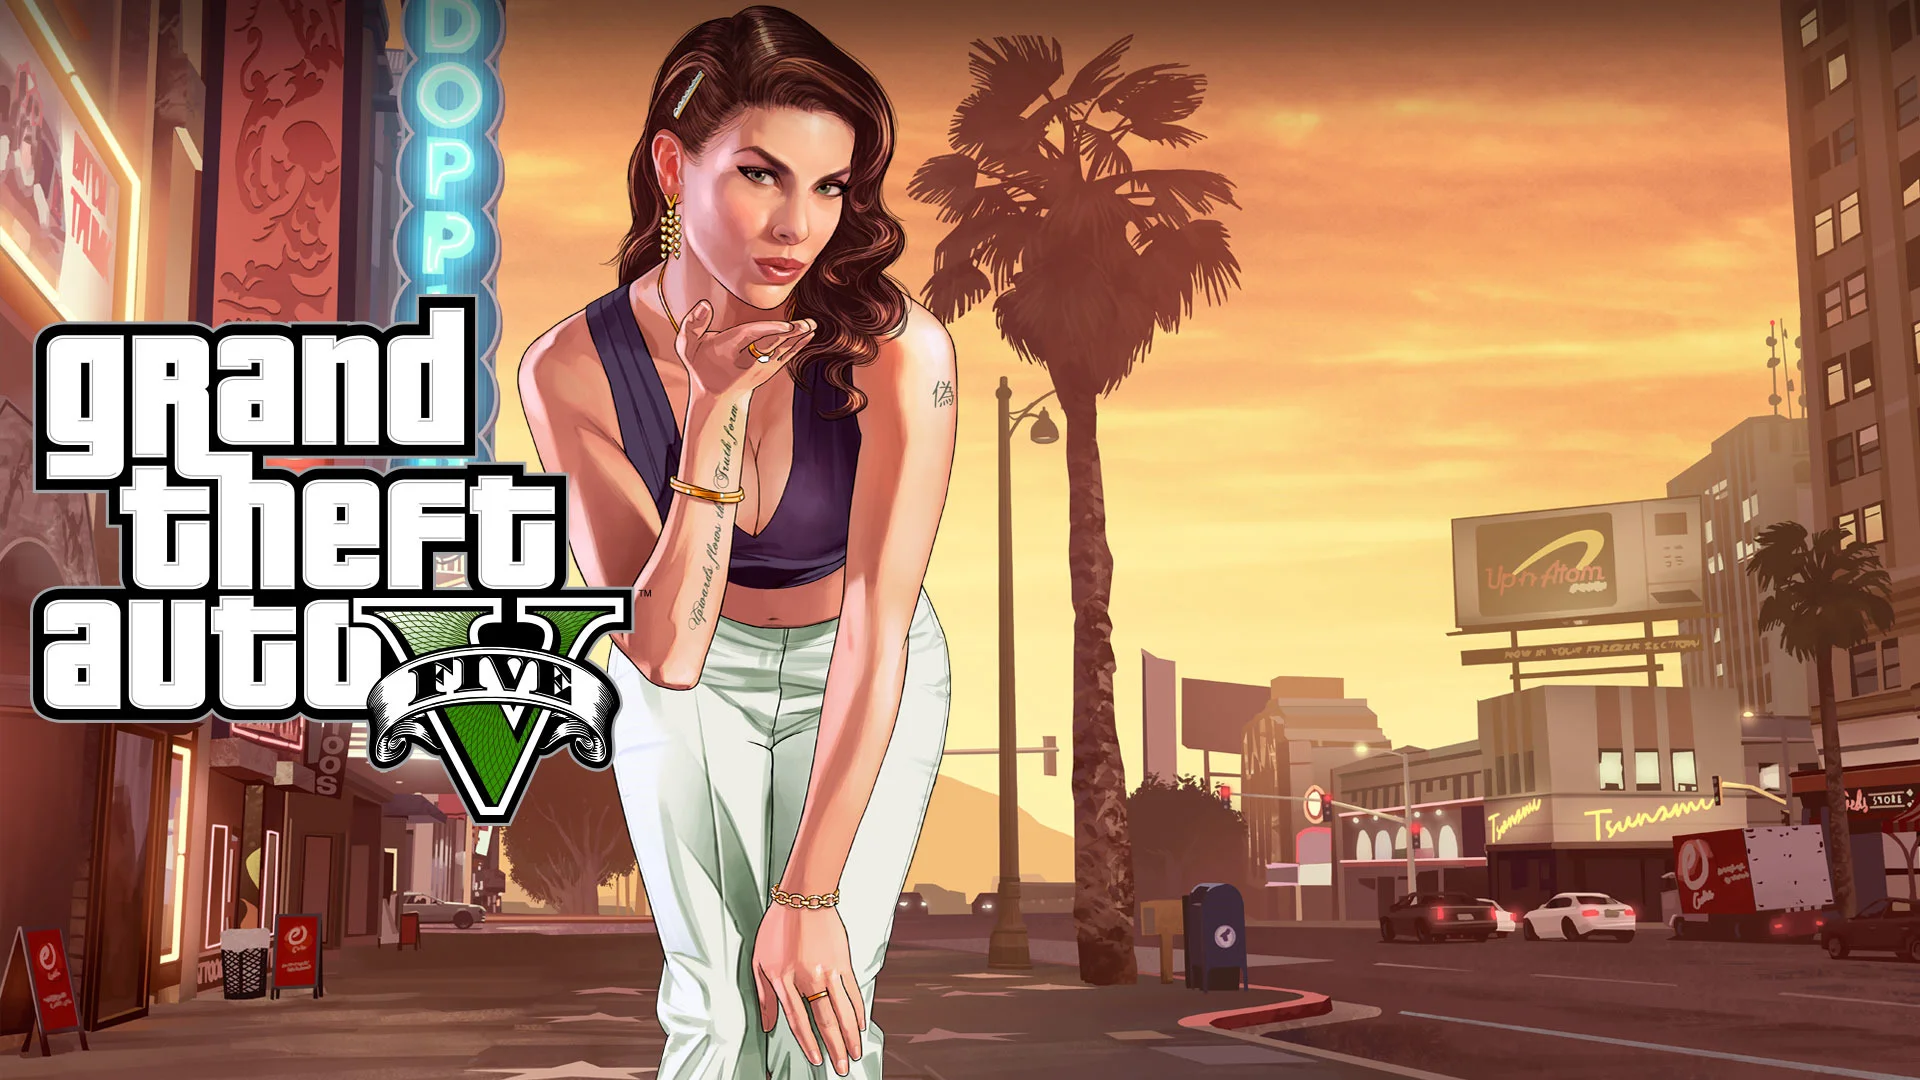 Обложка: промо Grand Theft Auto V